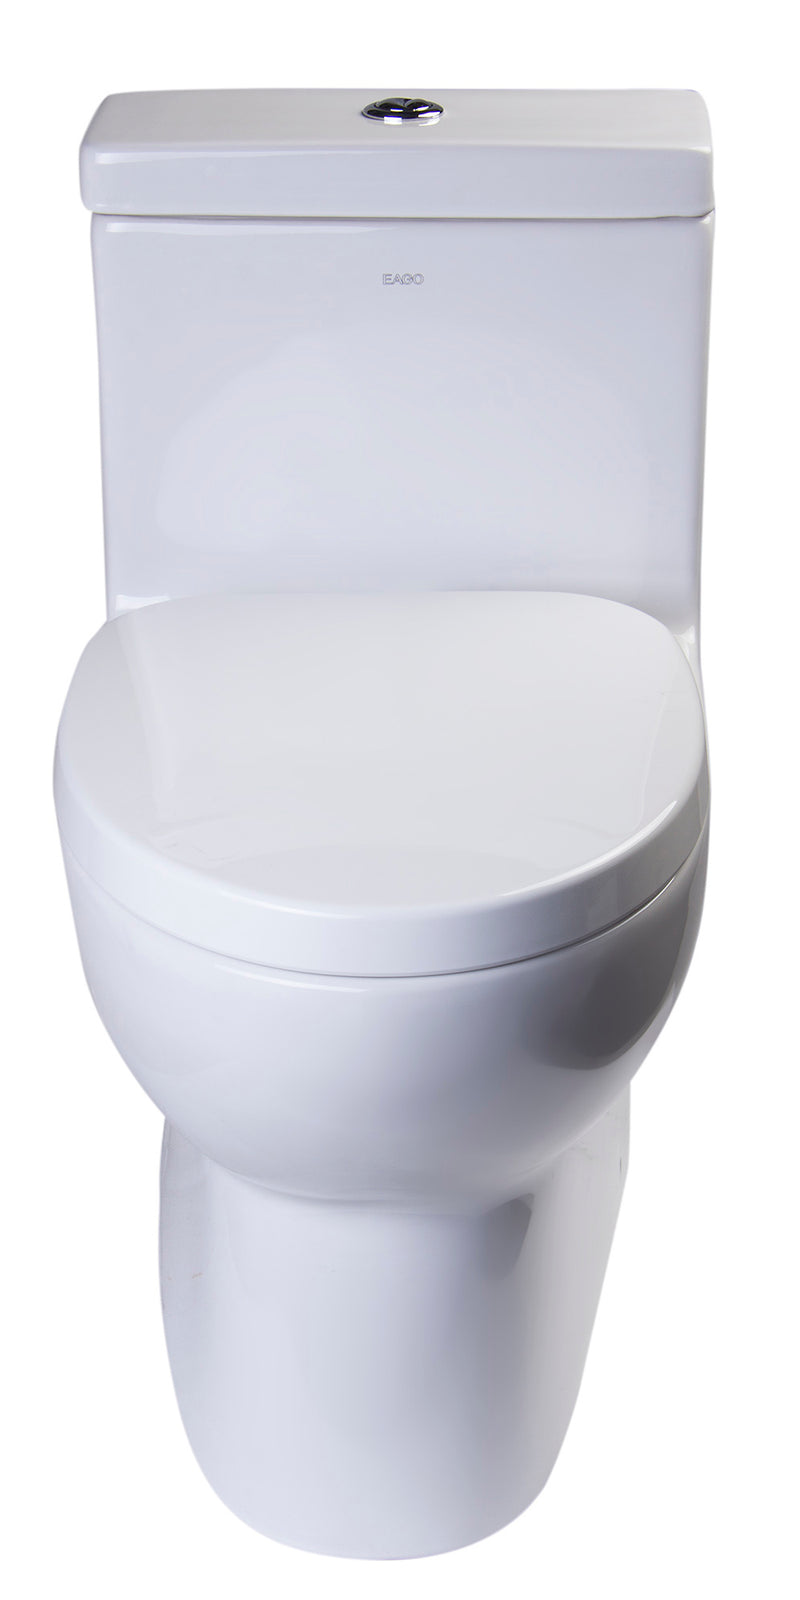 EAGO USA EAGO TB359 Dual Flush High Efficiency Low Flush Eco-Friendly White Toilet